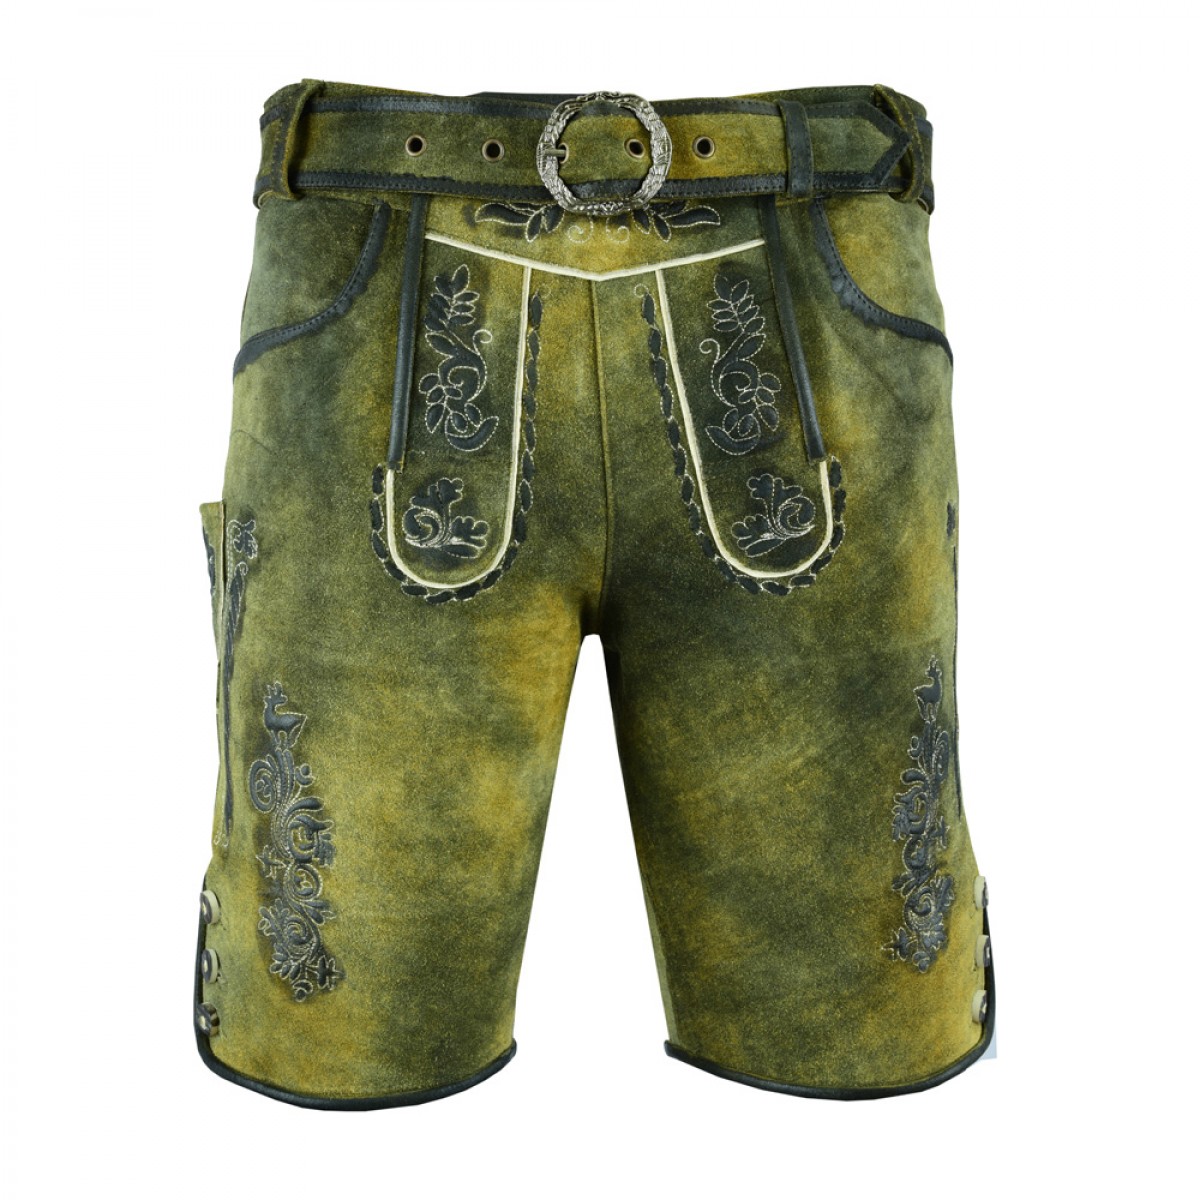 Beierse Lederhosen Shorts voor mannen Echt Authentiek Lederhosen Shorts Conic Fade Beierse Kostuums Kleding Herenkleding Shorts 